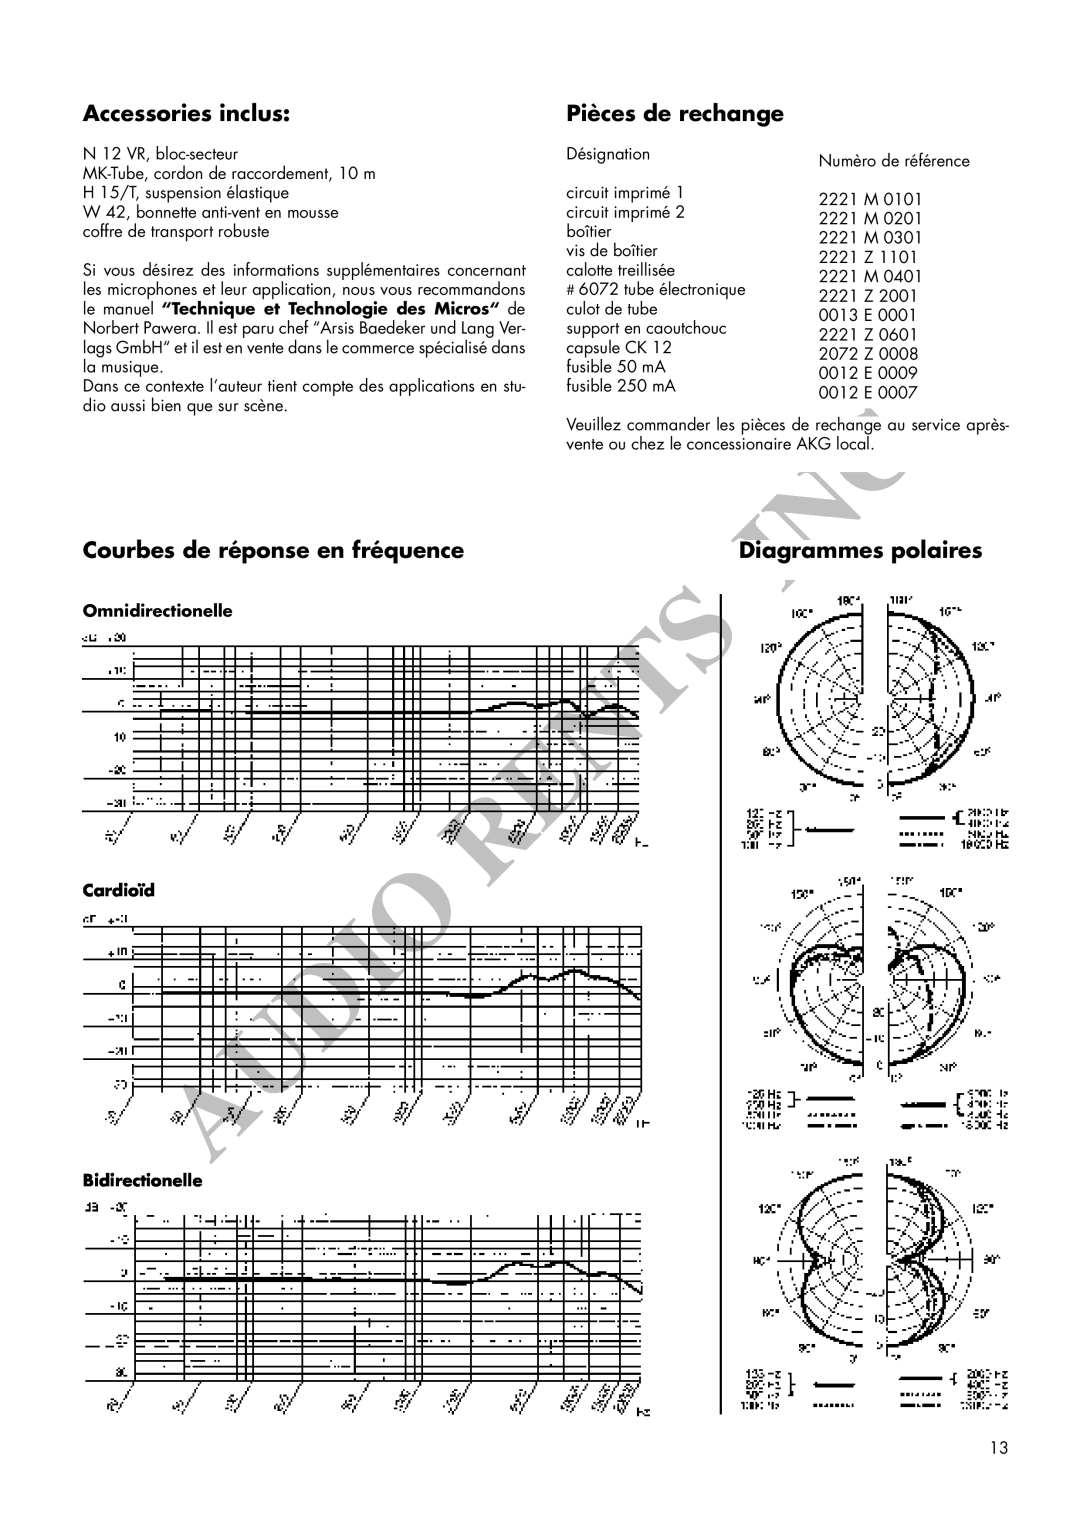 AKG Acoustics C 12VR manual Accessories inclus, Pièces de rechange, Courbes de réponse en fréquence, Diagrammes polaires 